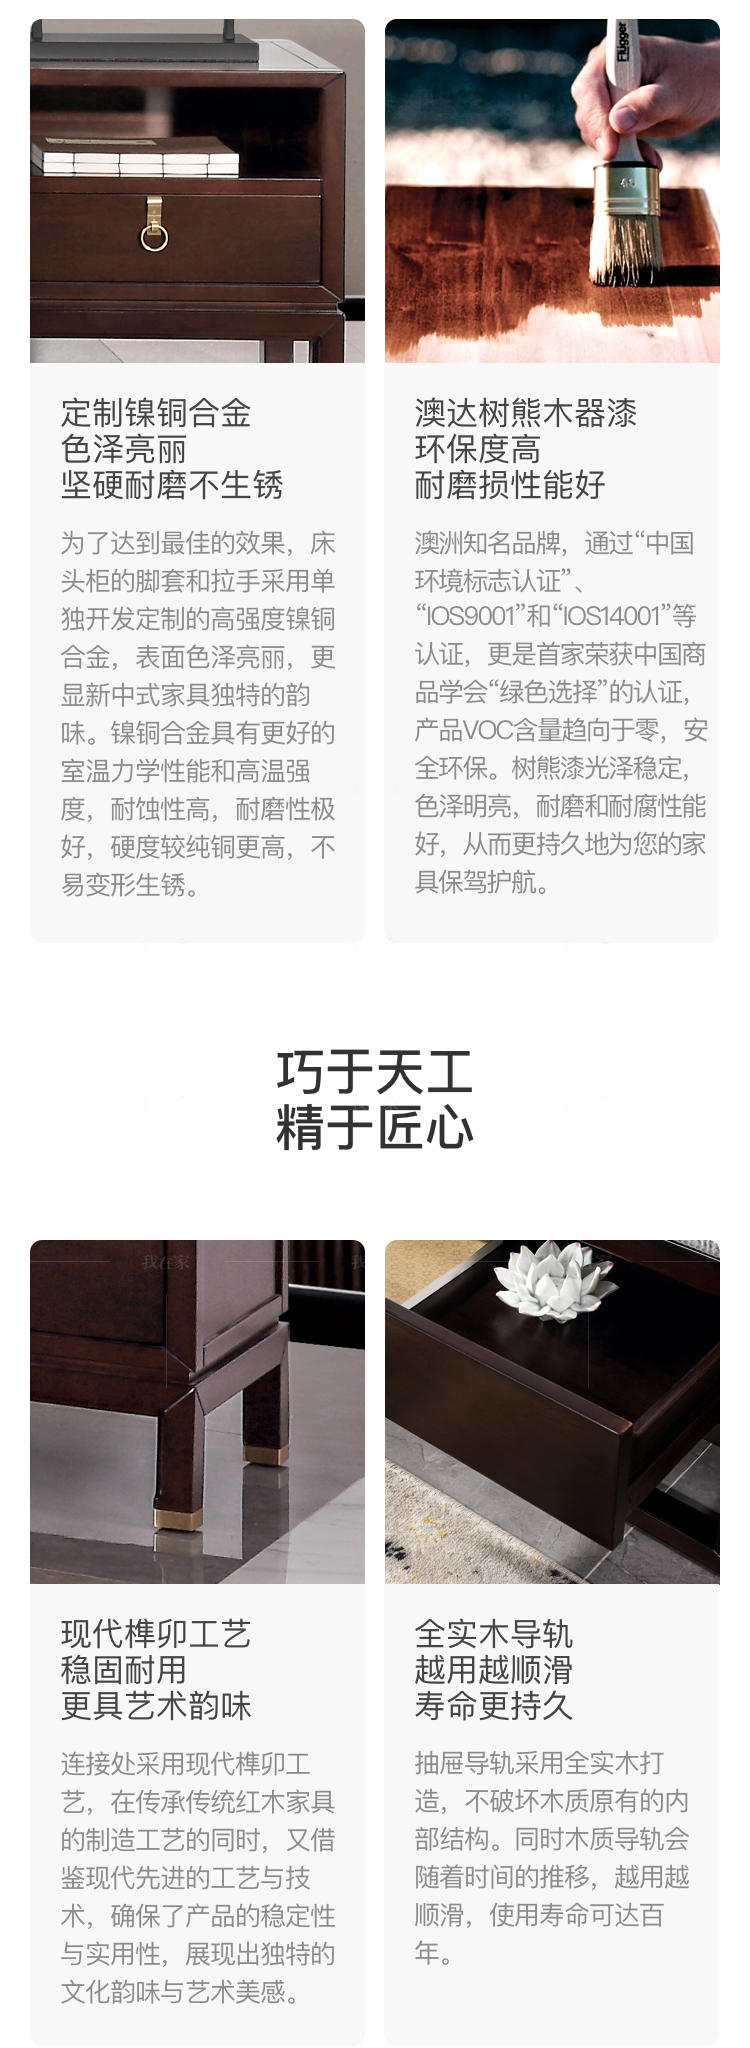 新中式风格秋月床头柜的家具详细介绍